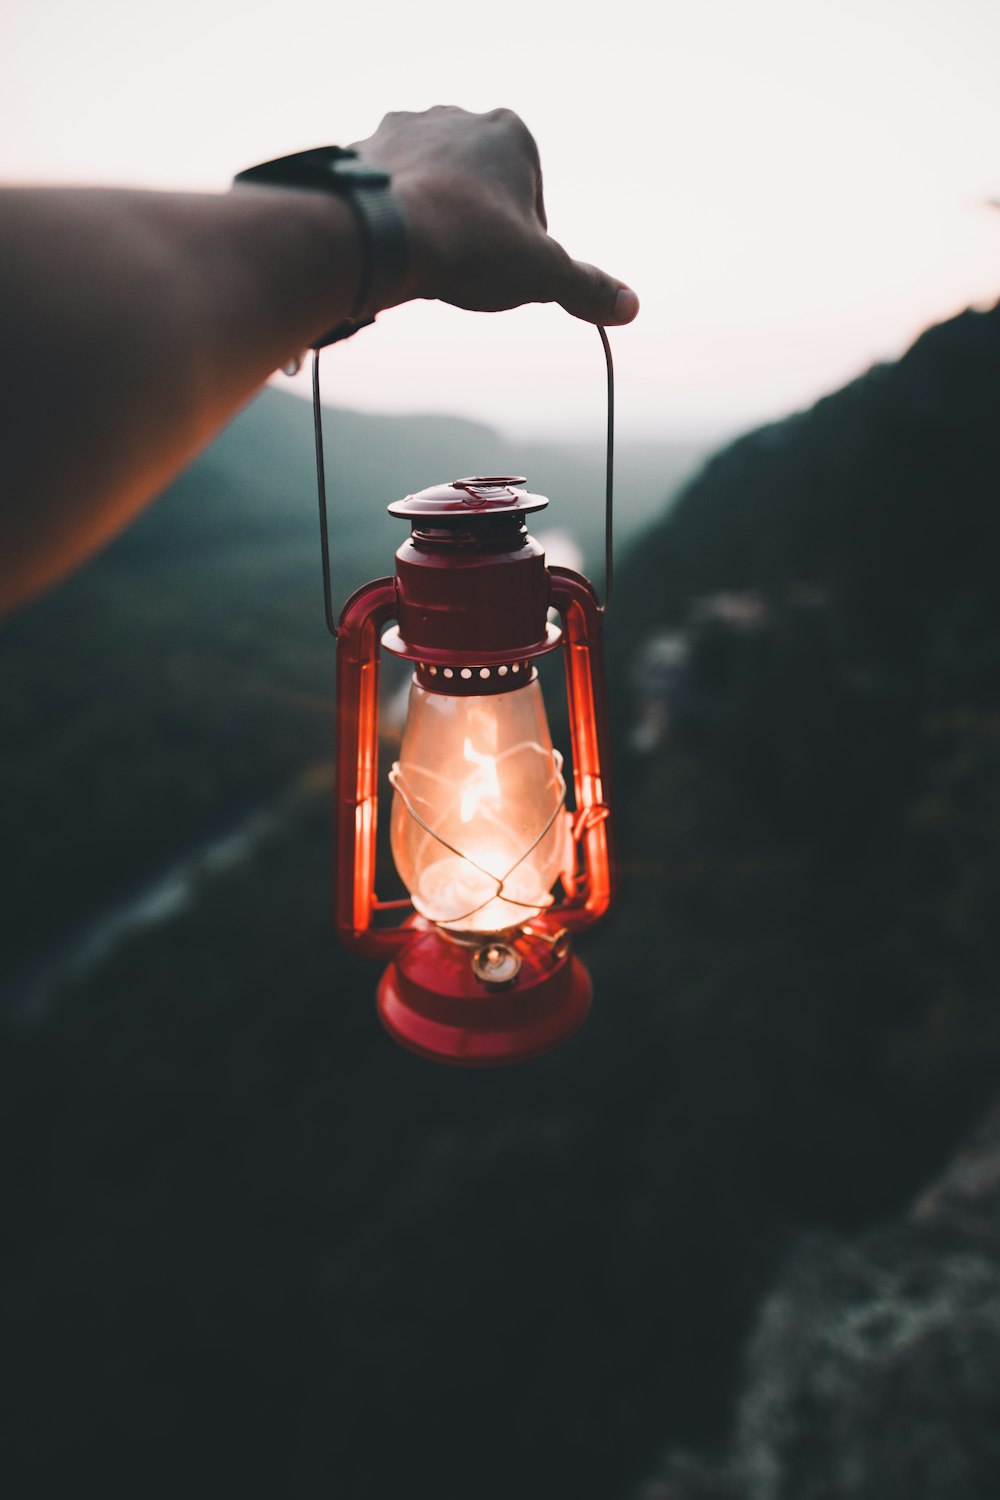 person holding red kerosene lamp